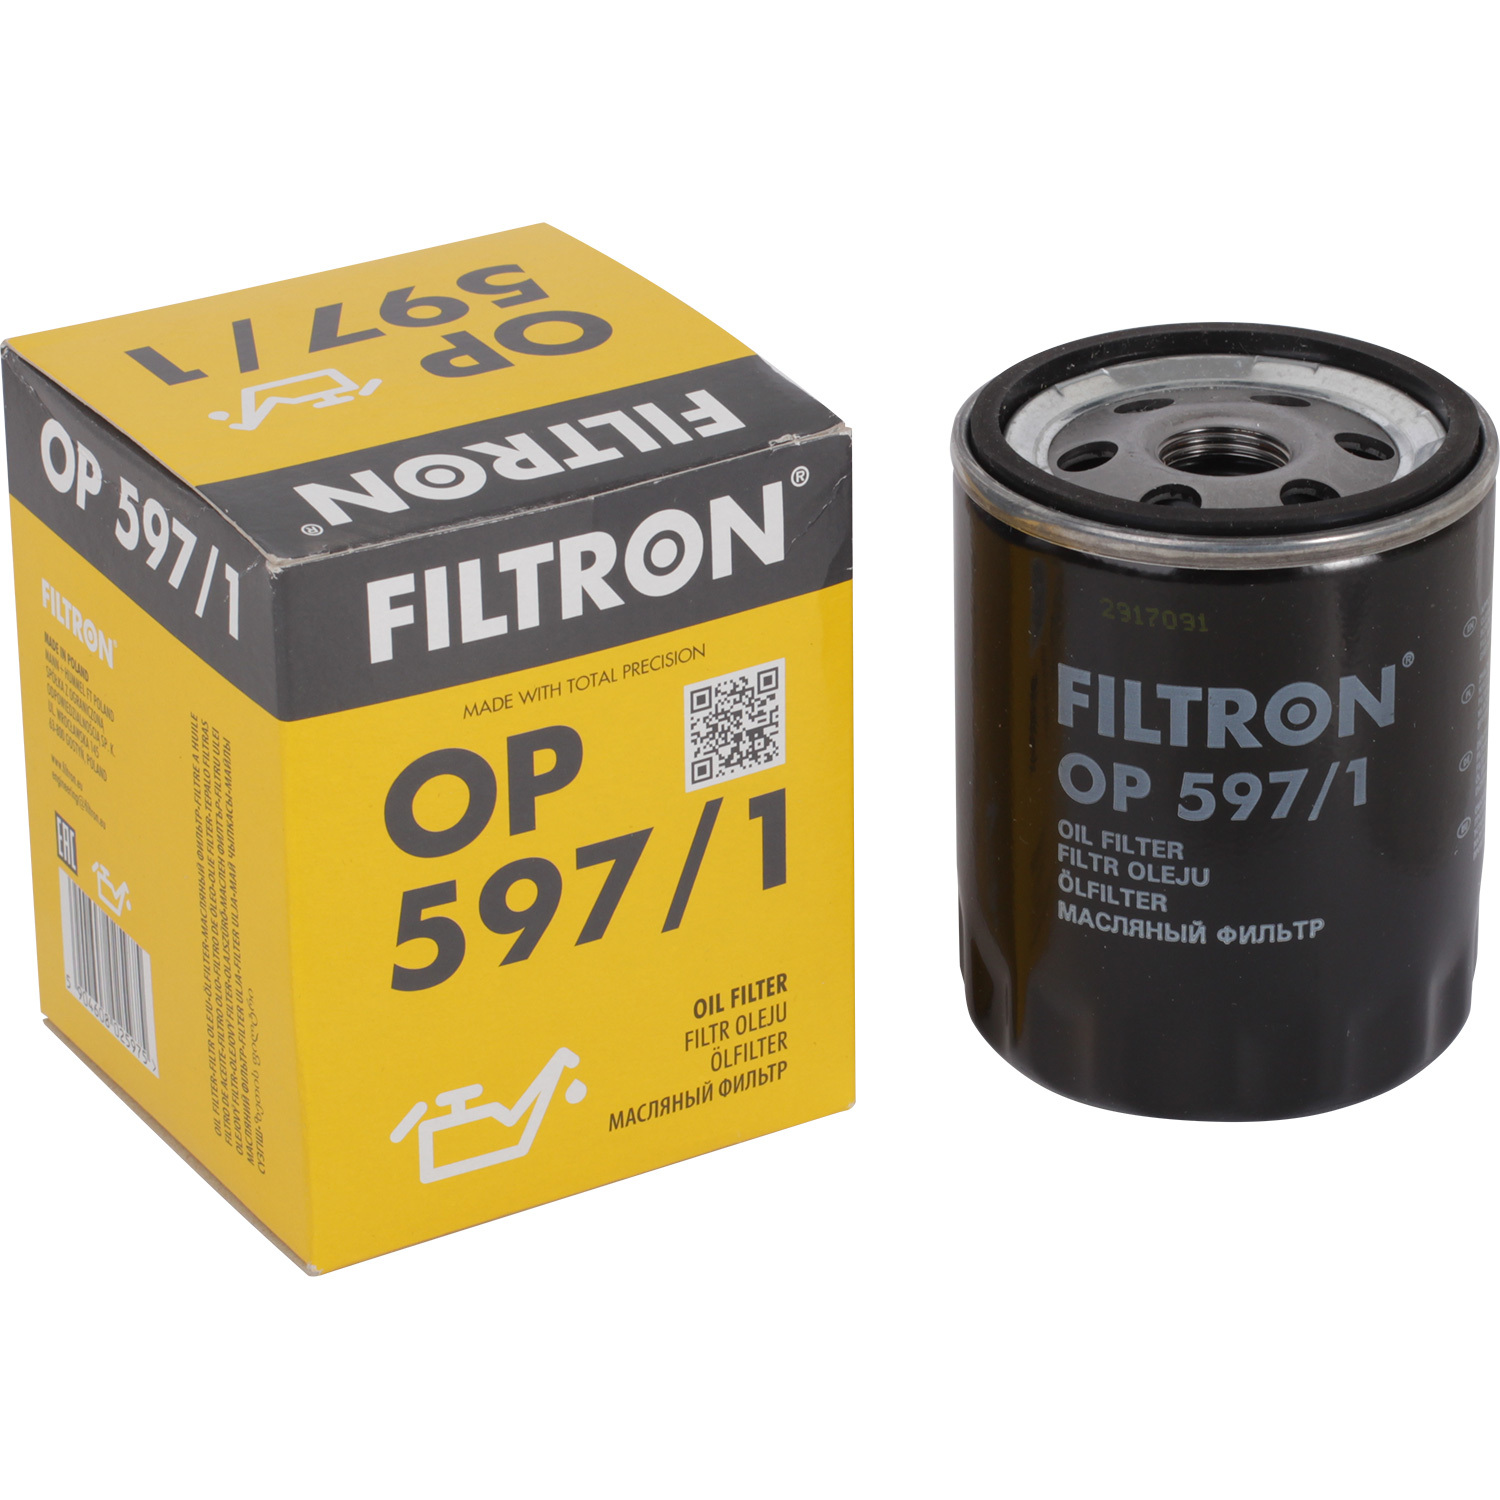 фильтры filtron фильтр масляный filtron op5662 Фильтры Filtron Фильтр масляный Filtron OP5971